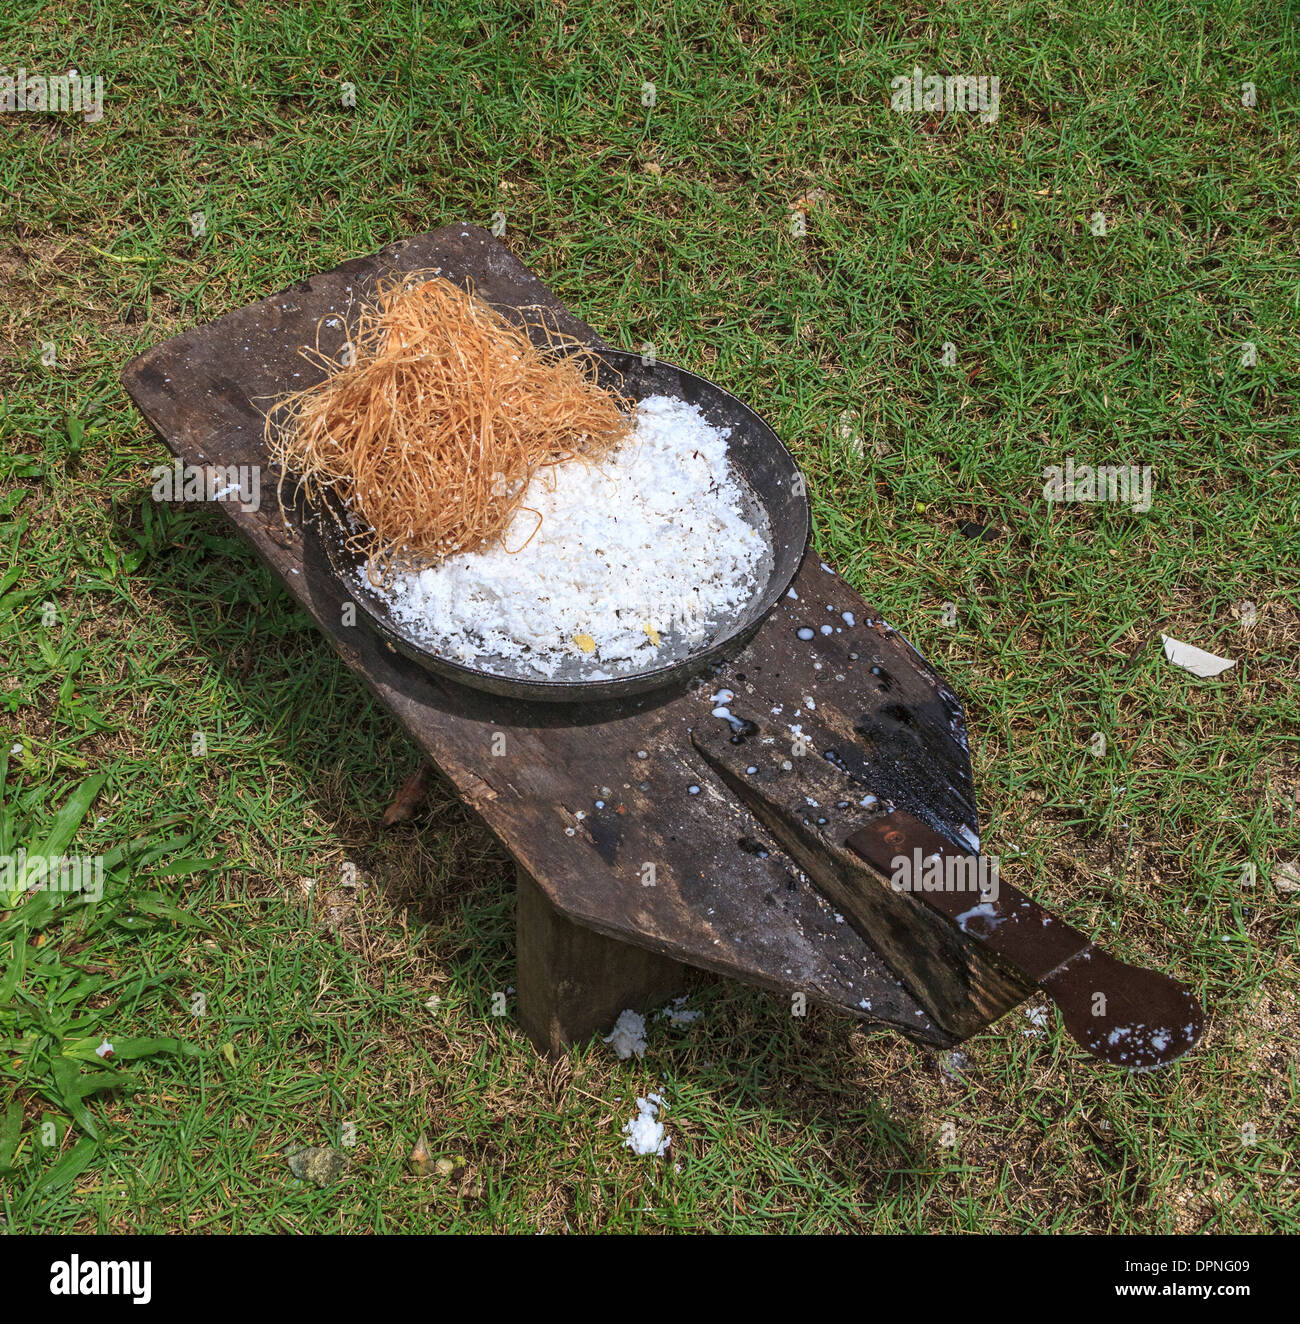 Recién coco rallado junto con hibiscus fibra árbol sentado en herramienta tradicional utilizado para destruir el coco en Micronesia. Foto de stock